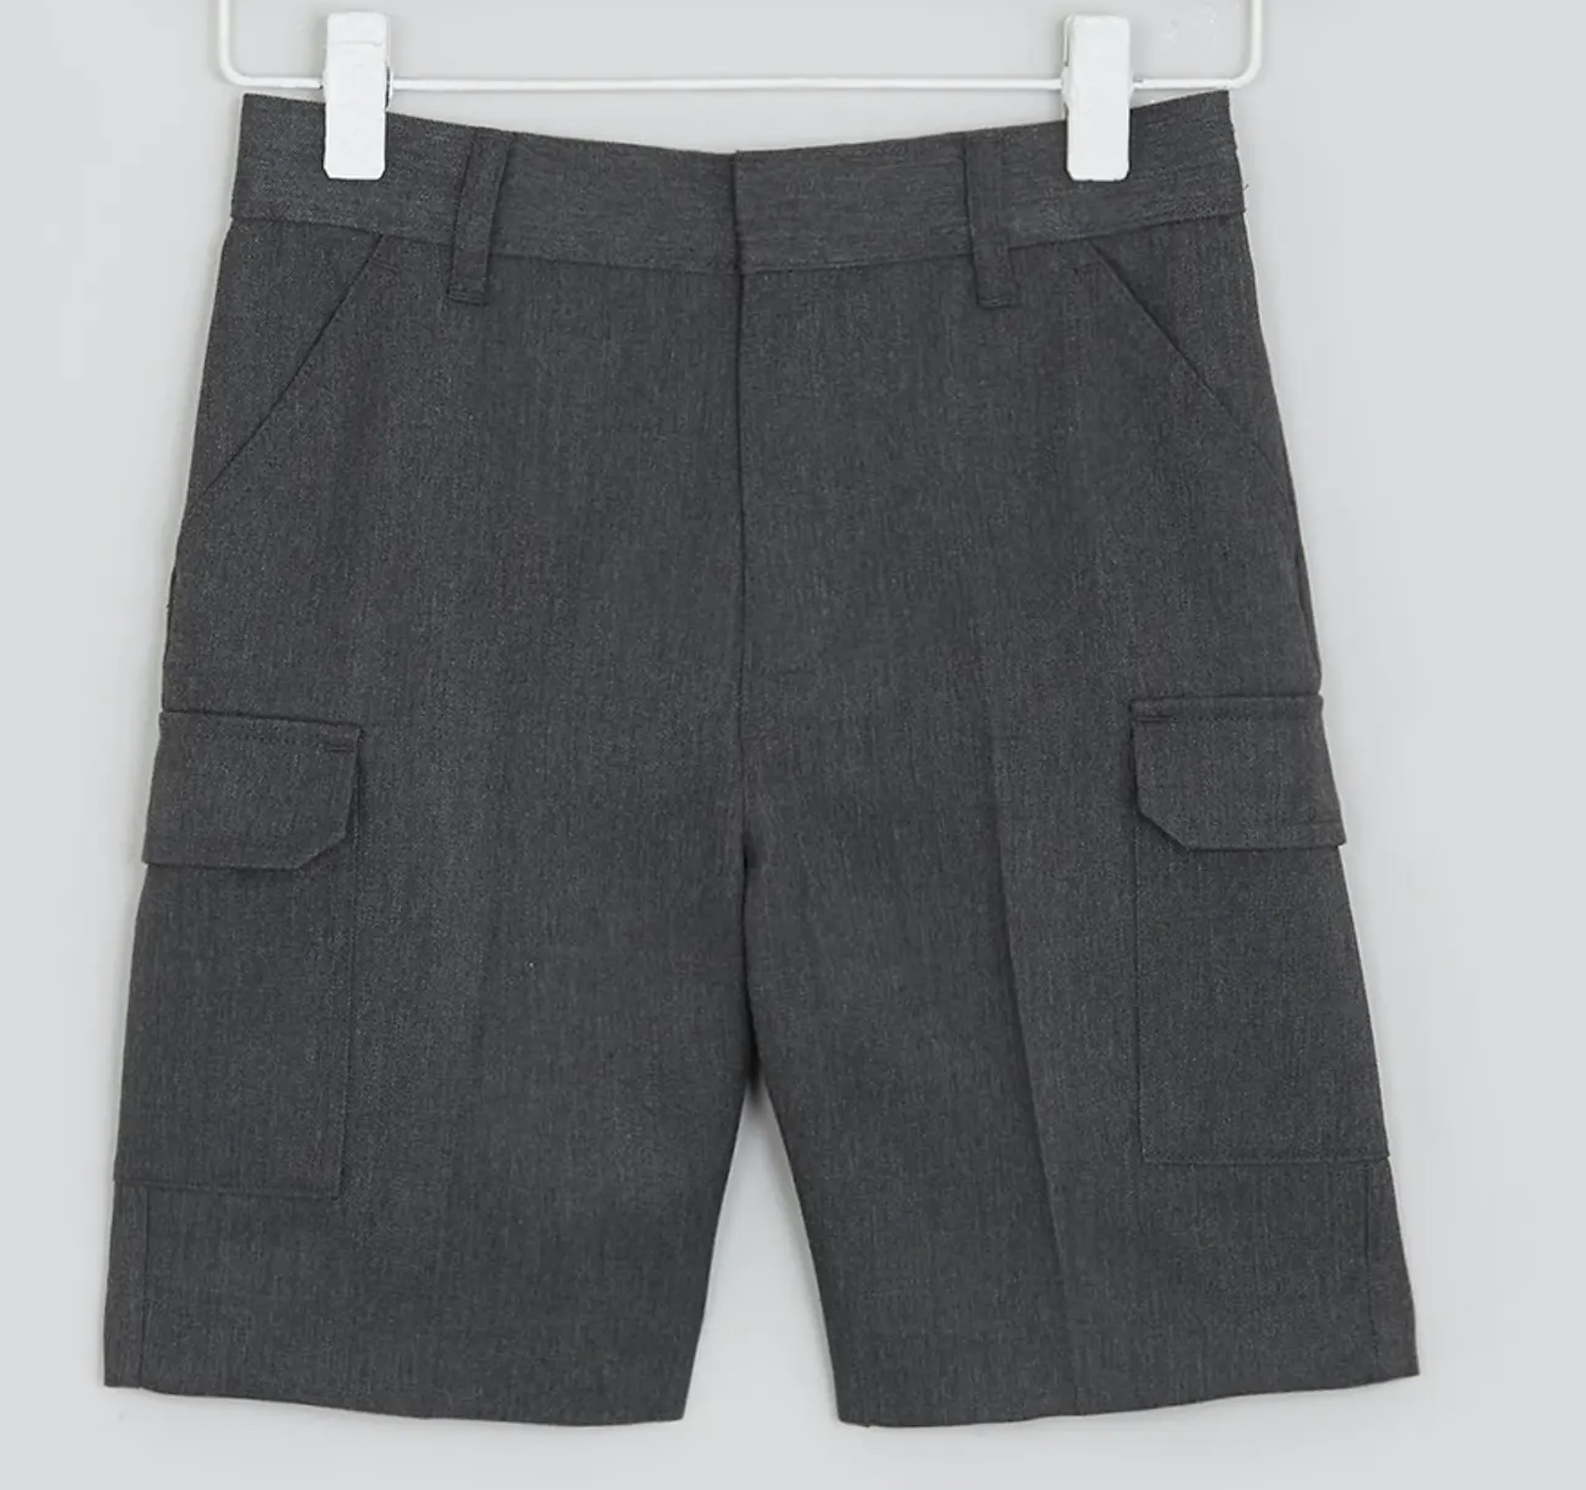 Boys' Dark Grey Cargo Shorts, Flat Front, Adjustable Waist, Four Pockets 9-10 Y